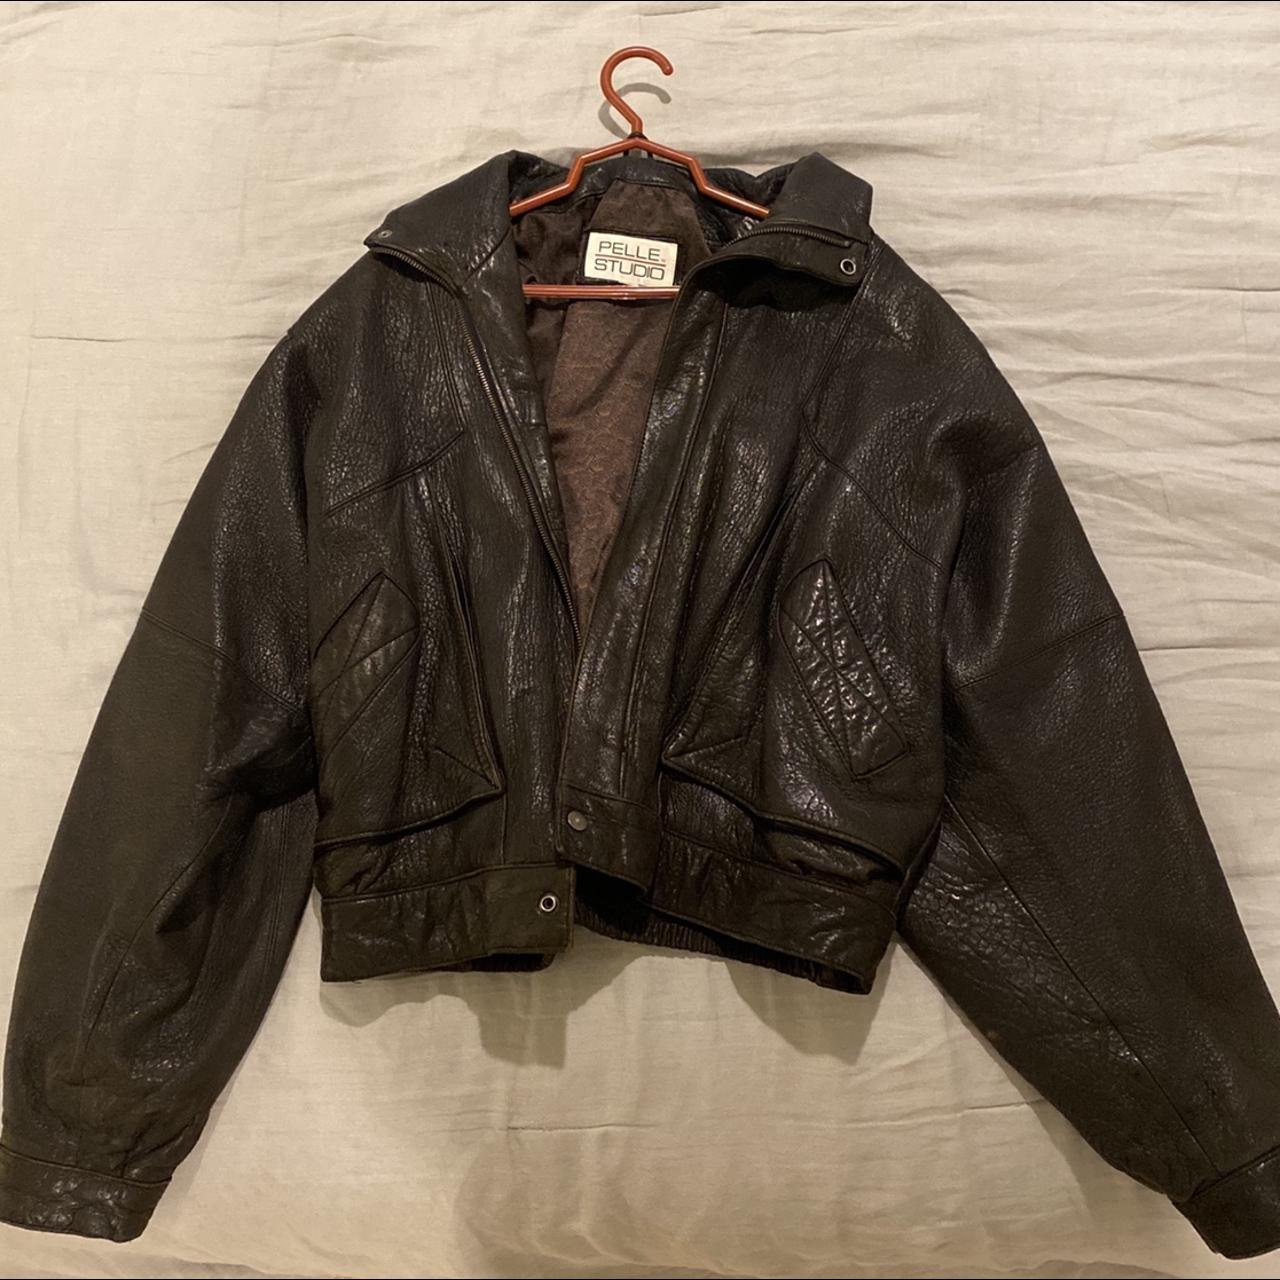 Vintage Authentic Leather Jacket Size L - Great... - Depop